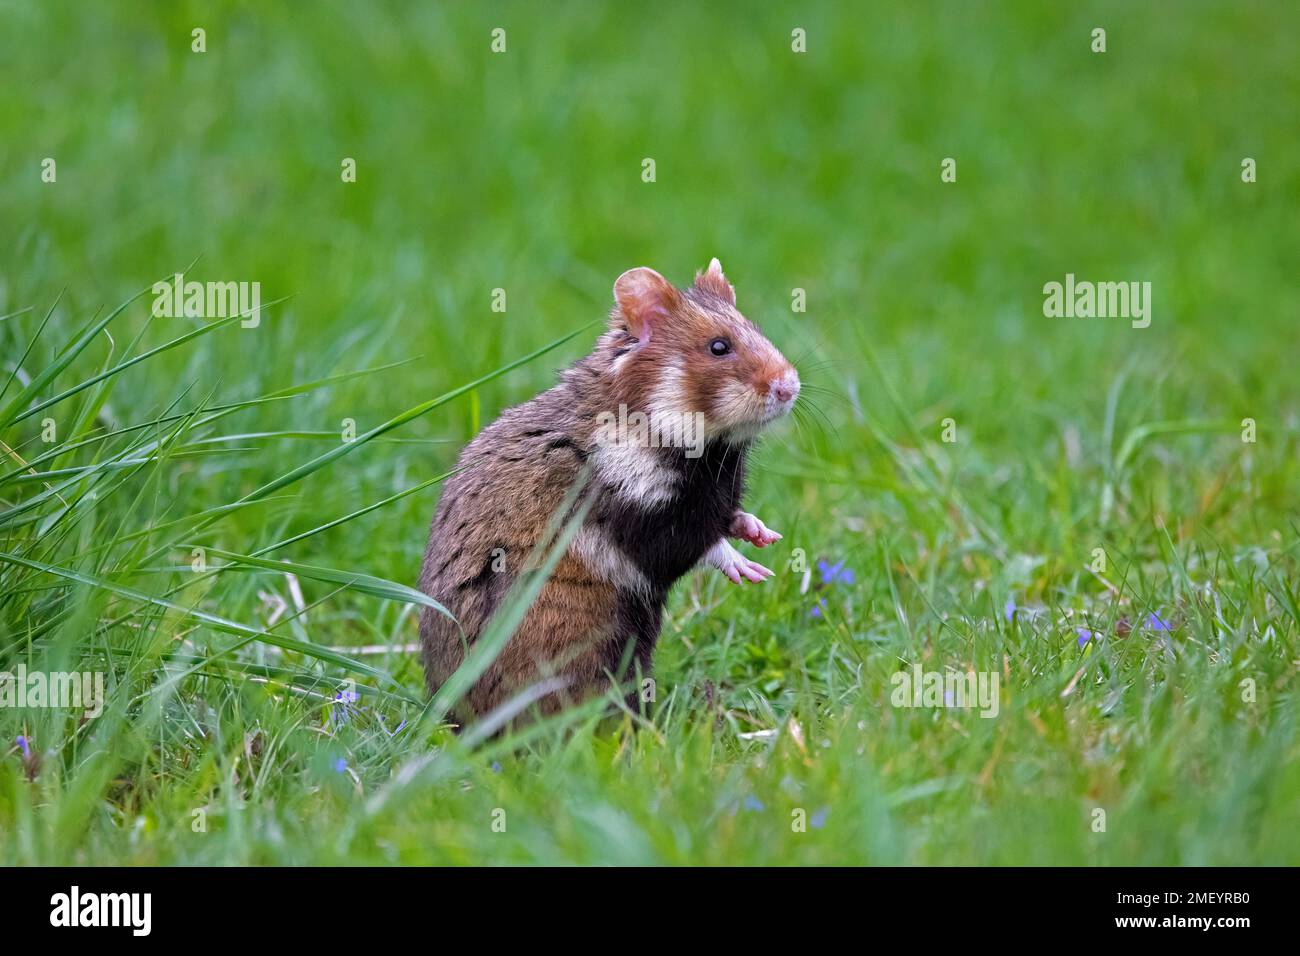 Hamster européen / hamster eurasien / hamster à ventre noir / hamster commun (Cricetus cricetus) fourragère dans les prairies au printemps Banque D'Images